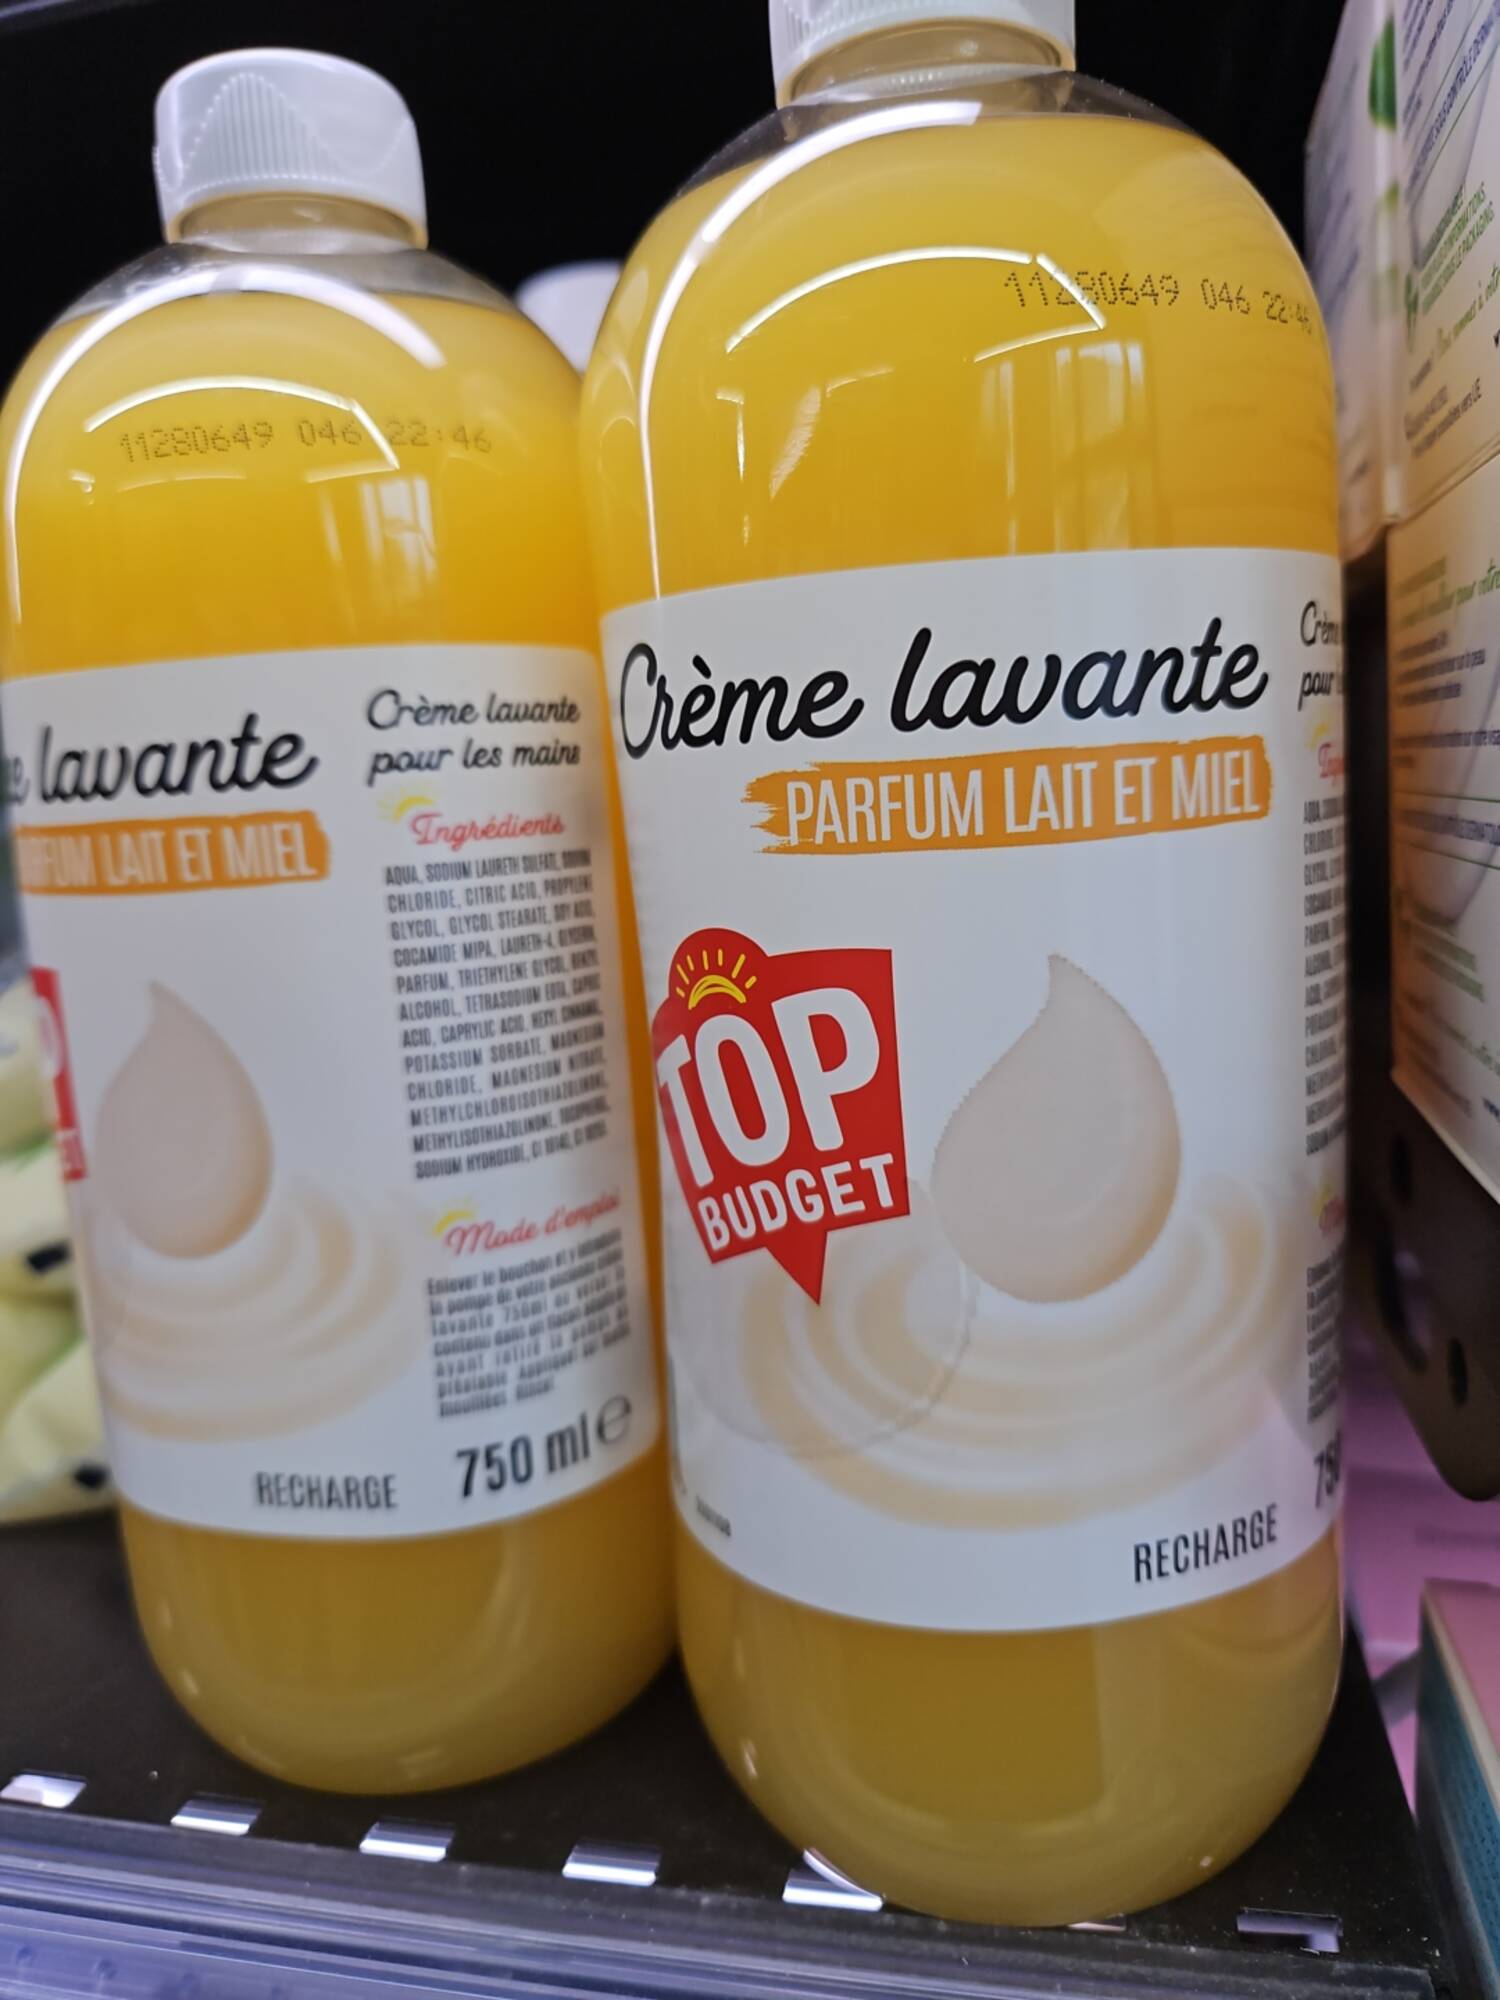 TOP BUDGET - Crème lavante parfum  lait et miel